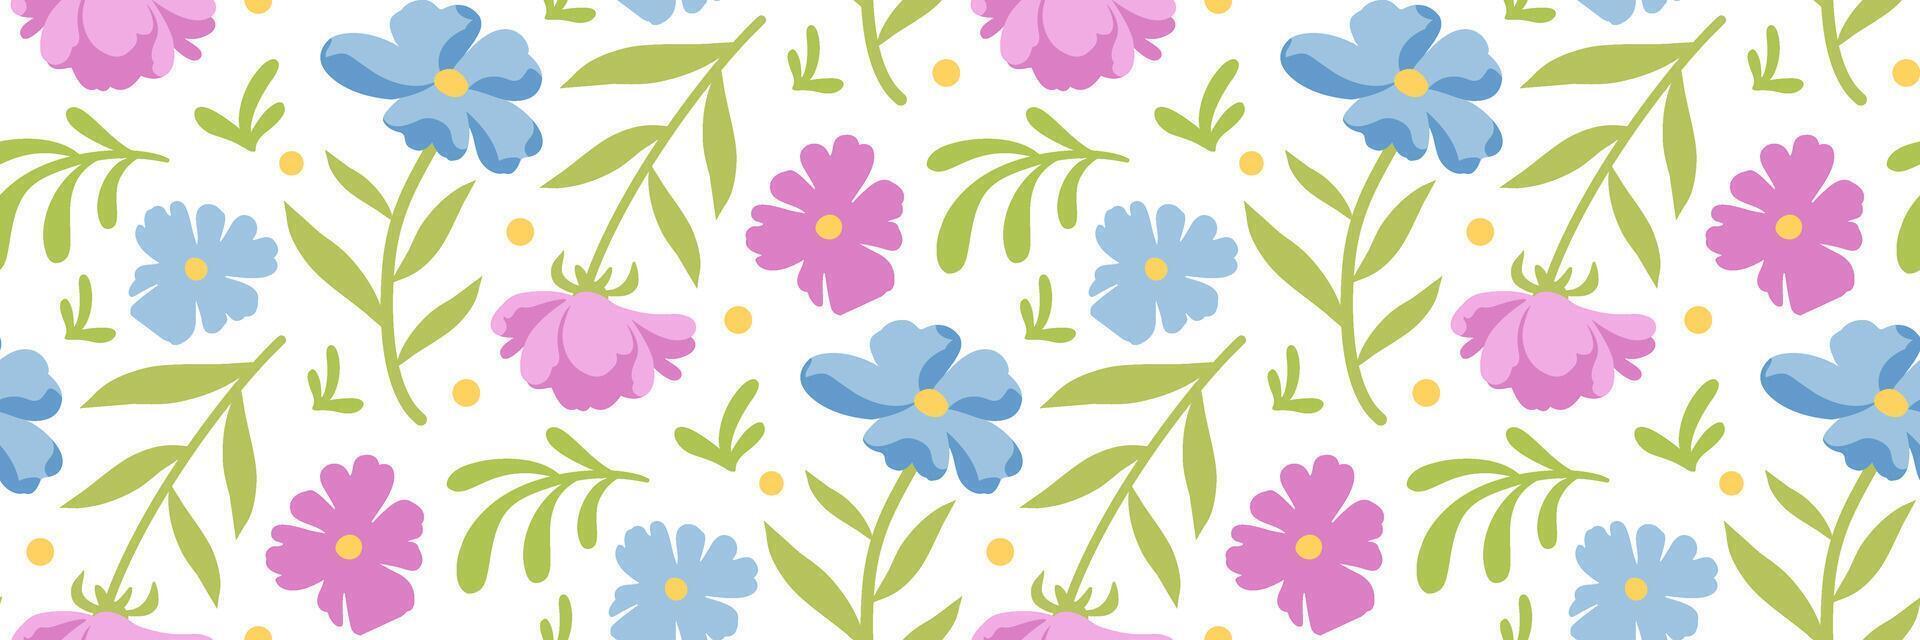 primavera flores modelo. floral impresión. azul y rosado pequeño flores y hojas. botánico antecedentes para invitación, bodas, textiles, fondos de pantalla, envase papel, embalaje. vector plano ilustración.